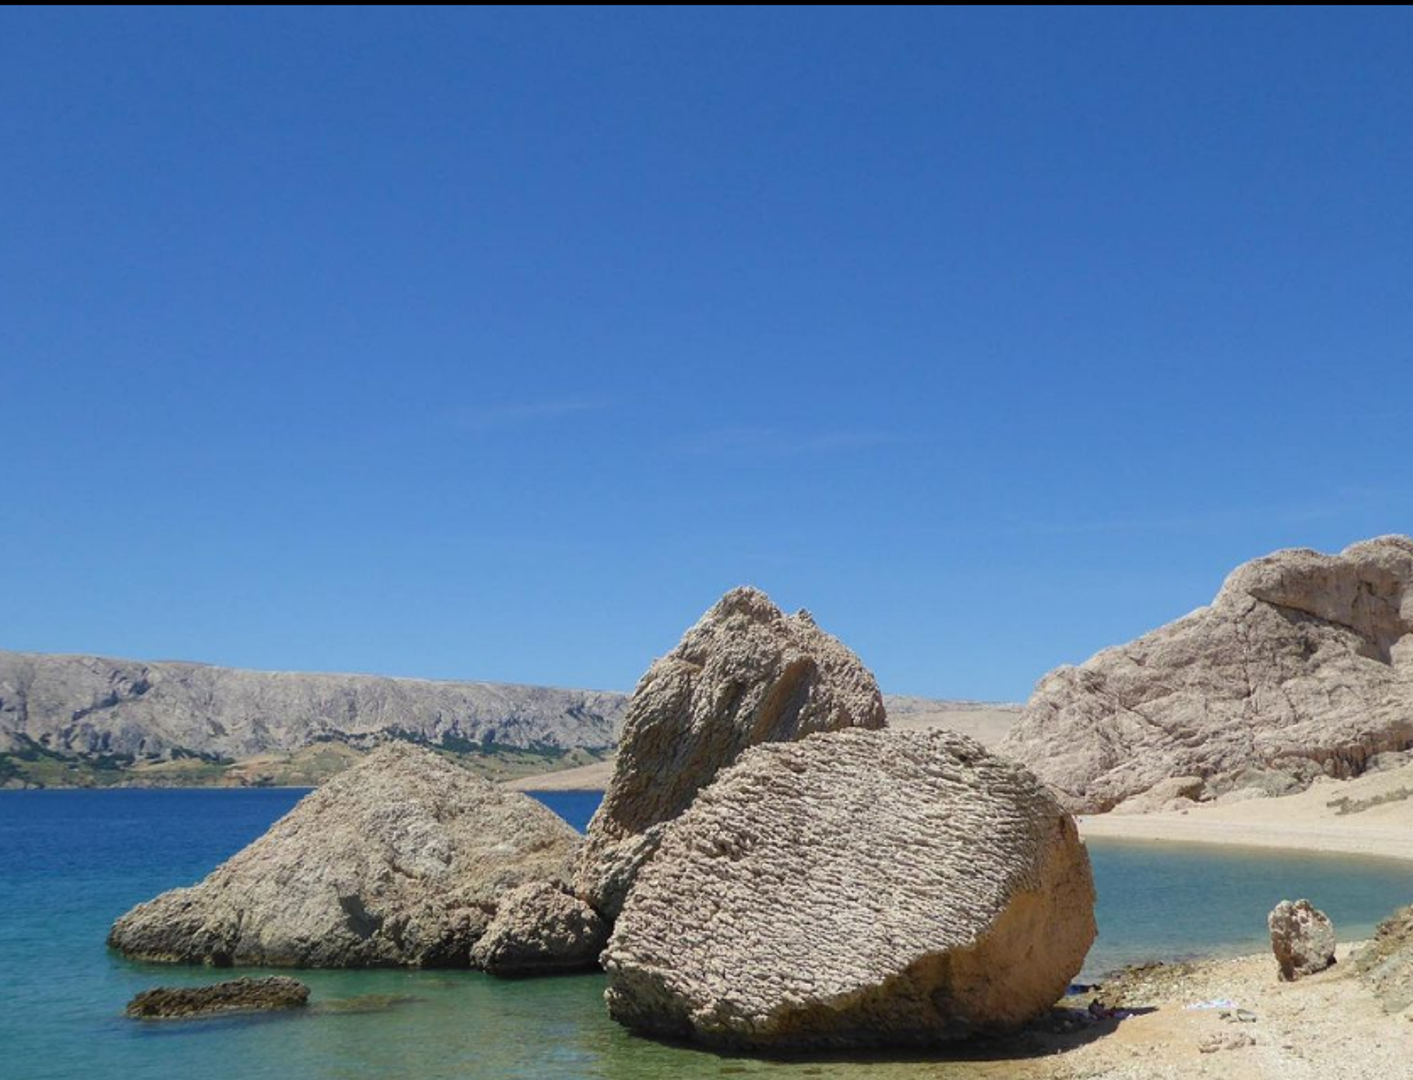 Plaža Beritnica nalazi se u mjestu Metajna na Pagu. Na njoj se nalaze tri velike kamene stijene, a ta prirodna instalacija uistinu je nezaboravan prizor. Radi se o šljunčanoj plaži do koje je moguće doći jedino pješice ili brodom.